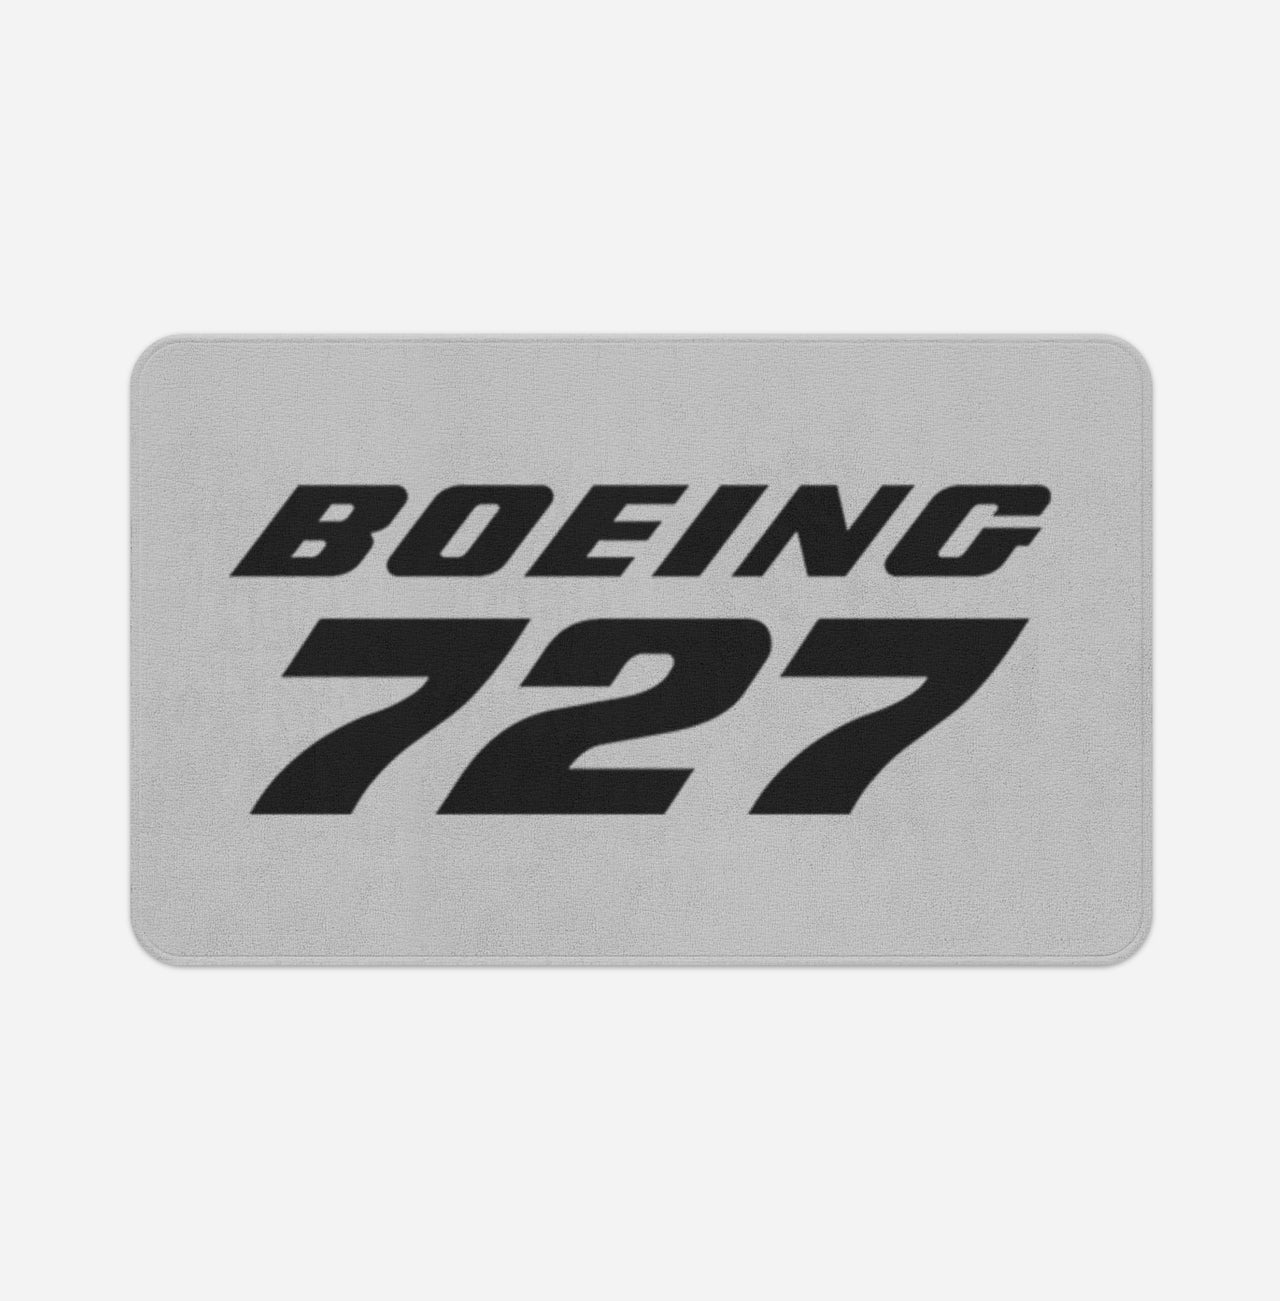 Boeing 727 & Text Designed Bath Mats